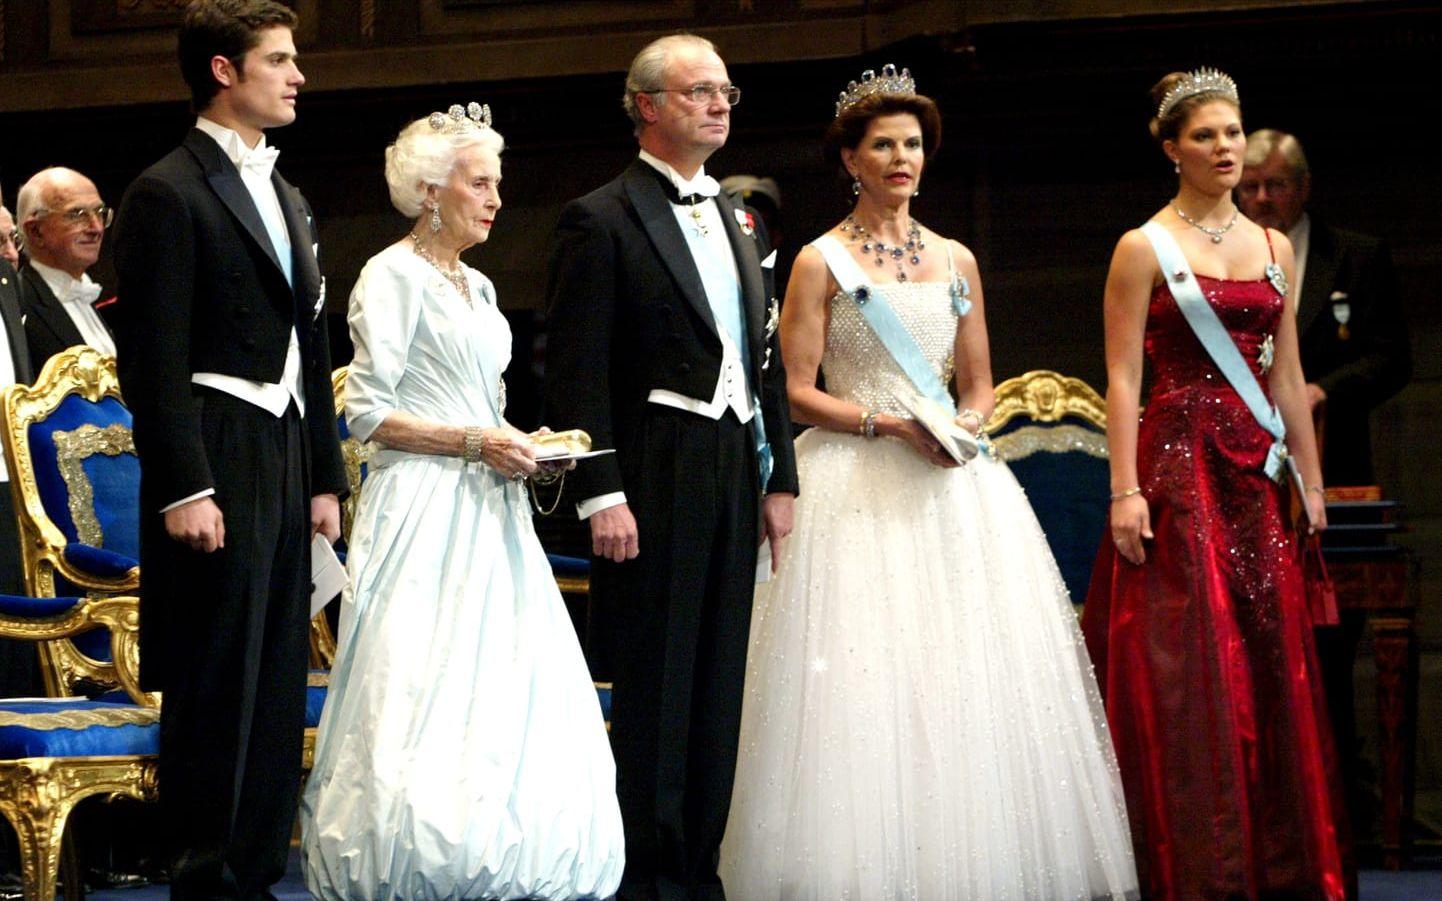 2001 bar drottningen en vit klänning med kjol av tyll fylld av kristaller och ett pärlbroderat liv. Prinsessan Madeleine bar klänningen på sin bröllopsmiddag år 2013. Klänningen är haute couture och från modehuset Nina Ricci.